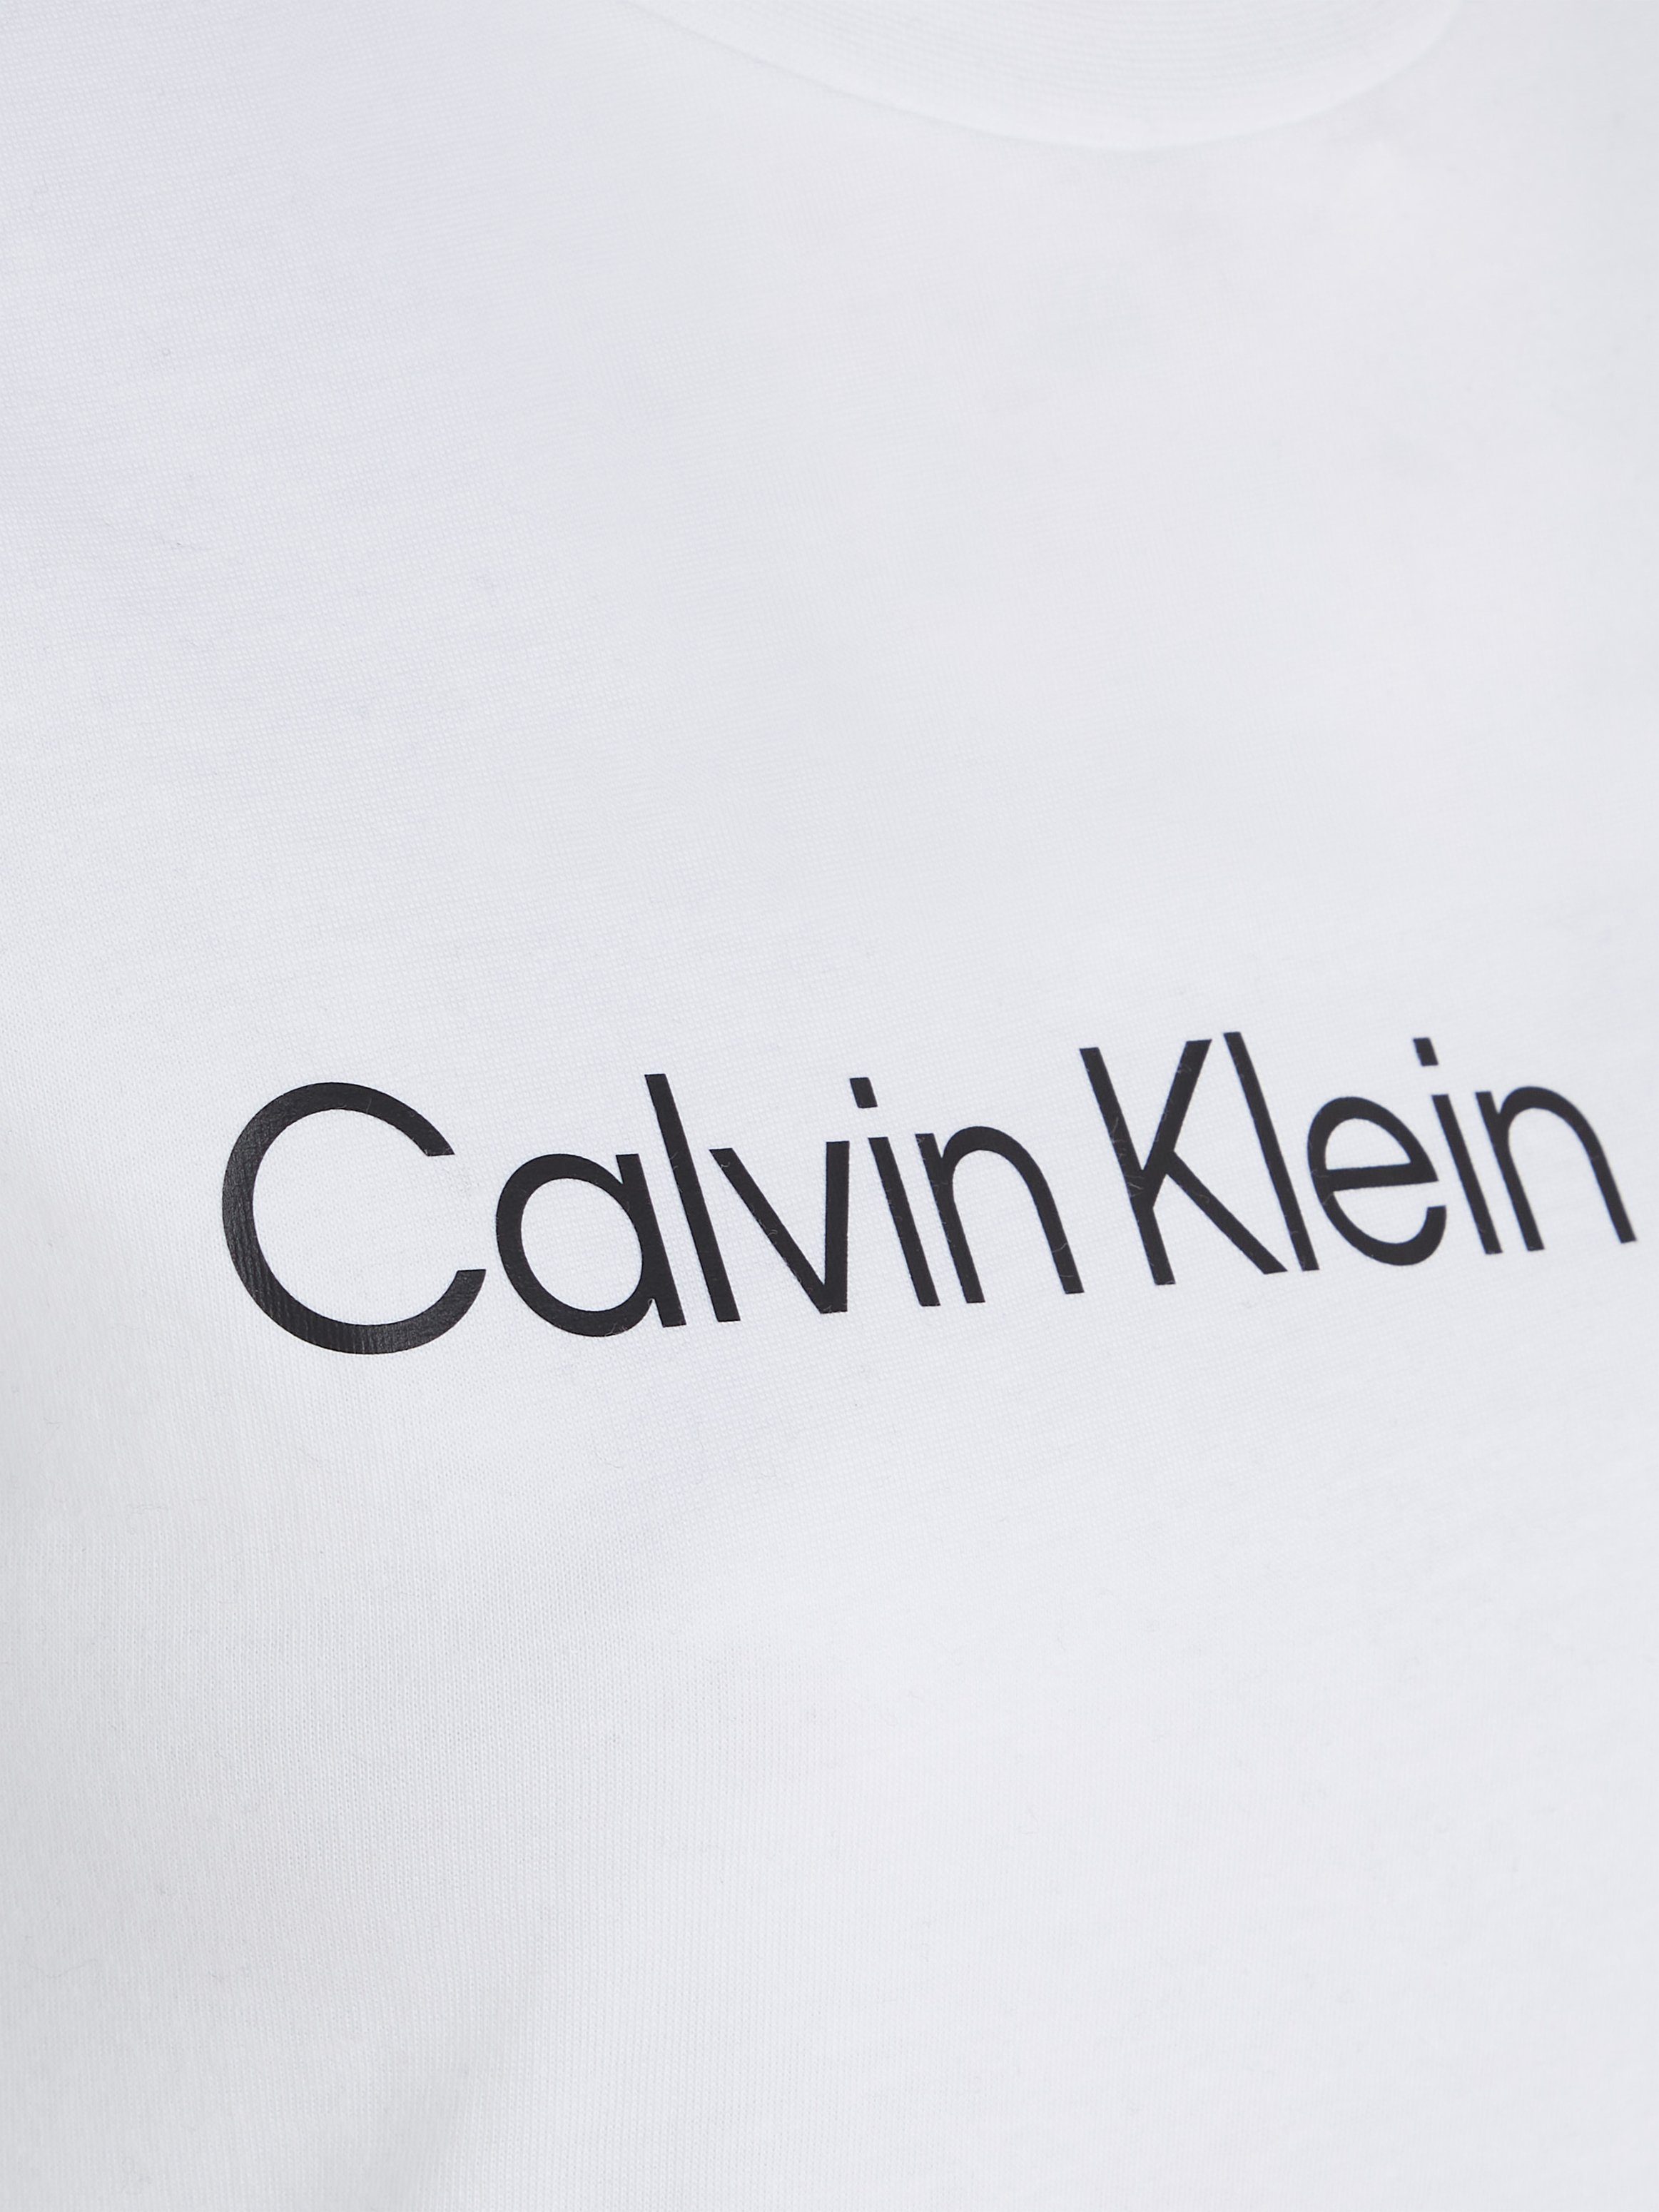 Calvin Klein Jeans T-Shirt CORE TEE SLIM INSTIT FIT CK-Logoschriftzug LOGO Bright White mit